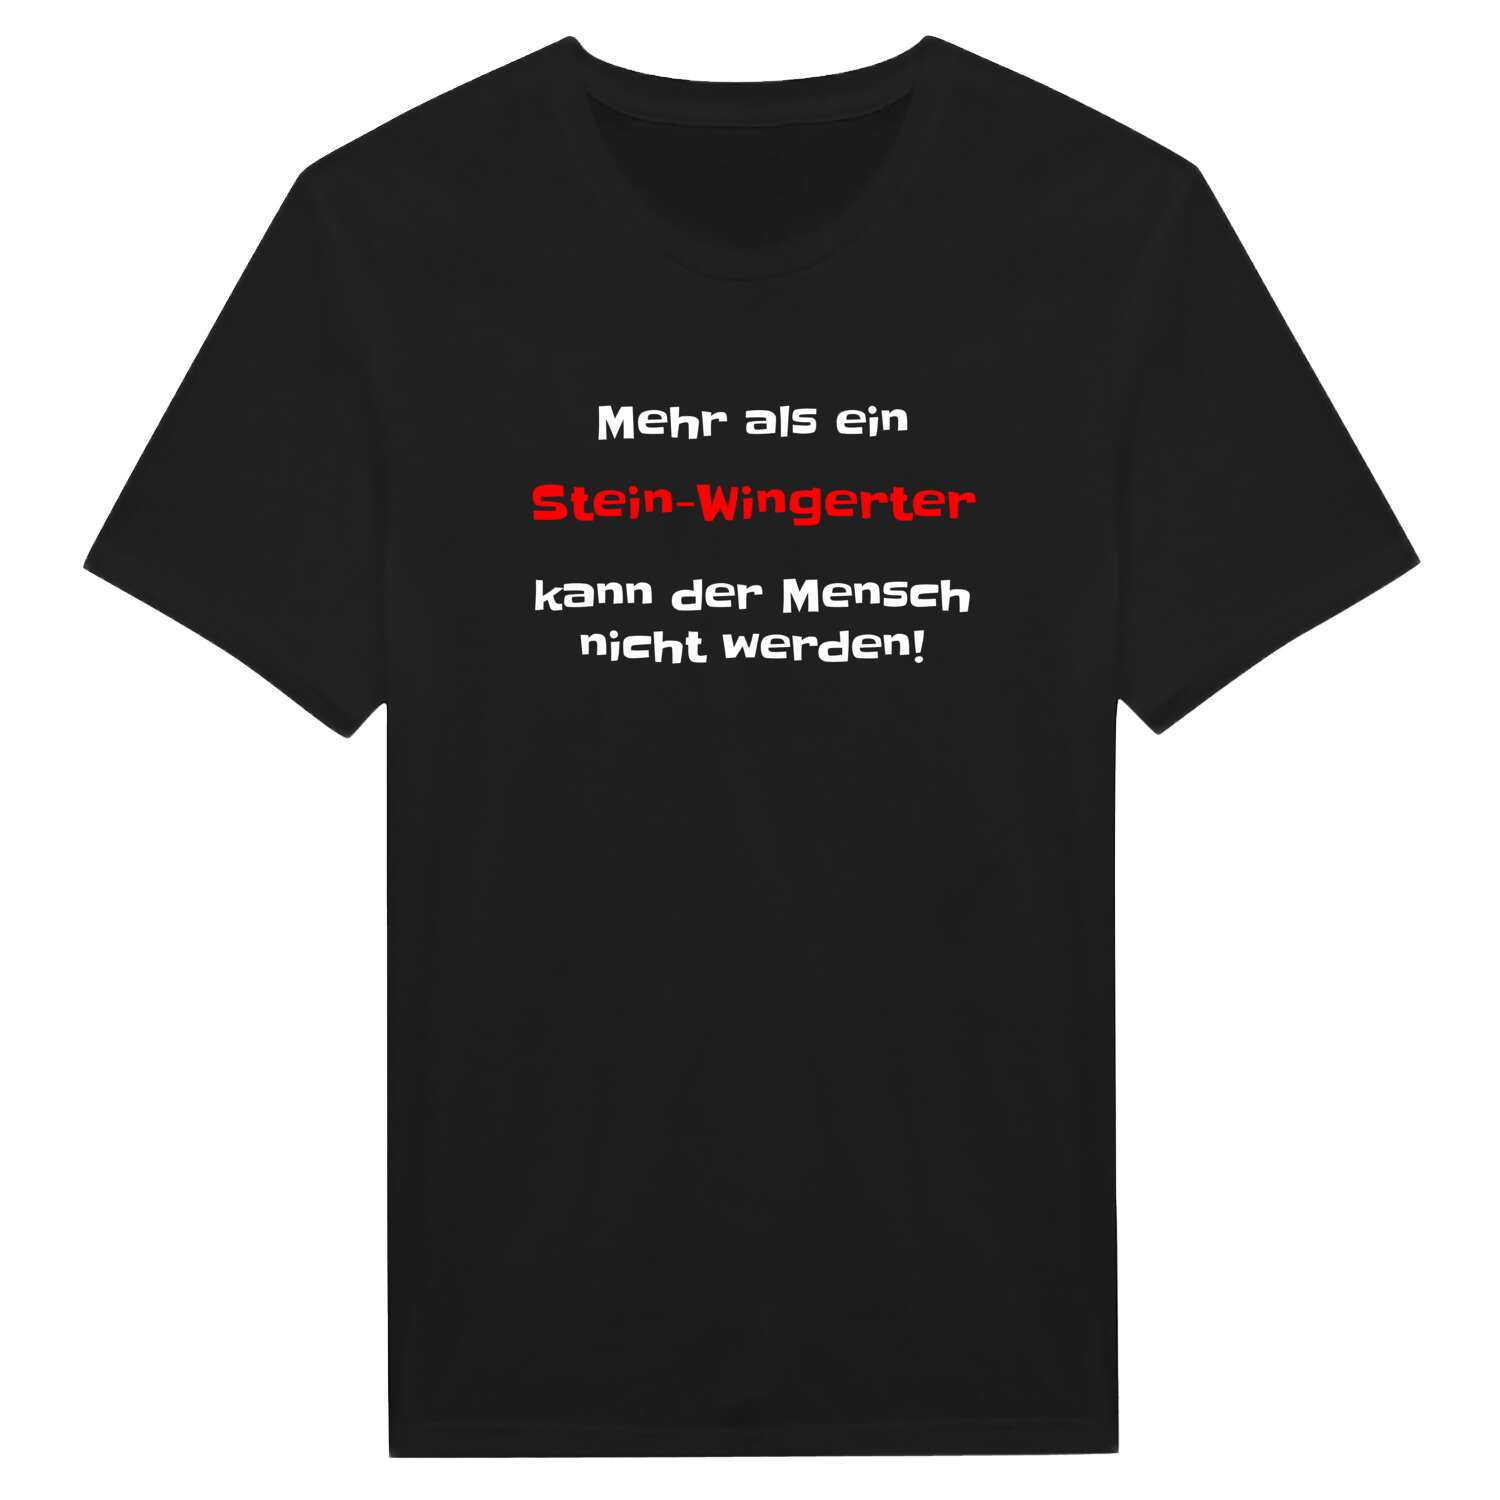 Stein-Wingert T-Shirt »Mehr als ein«